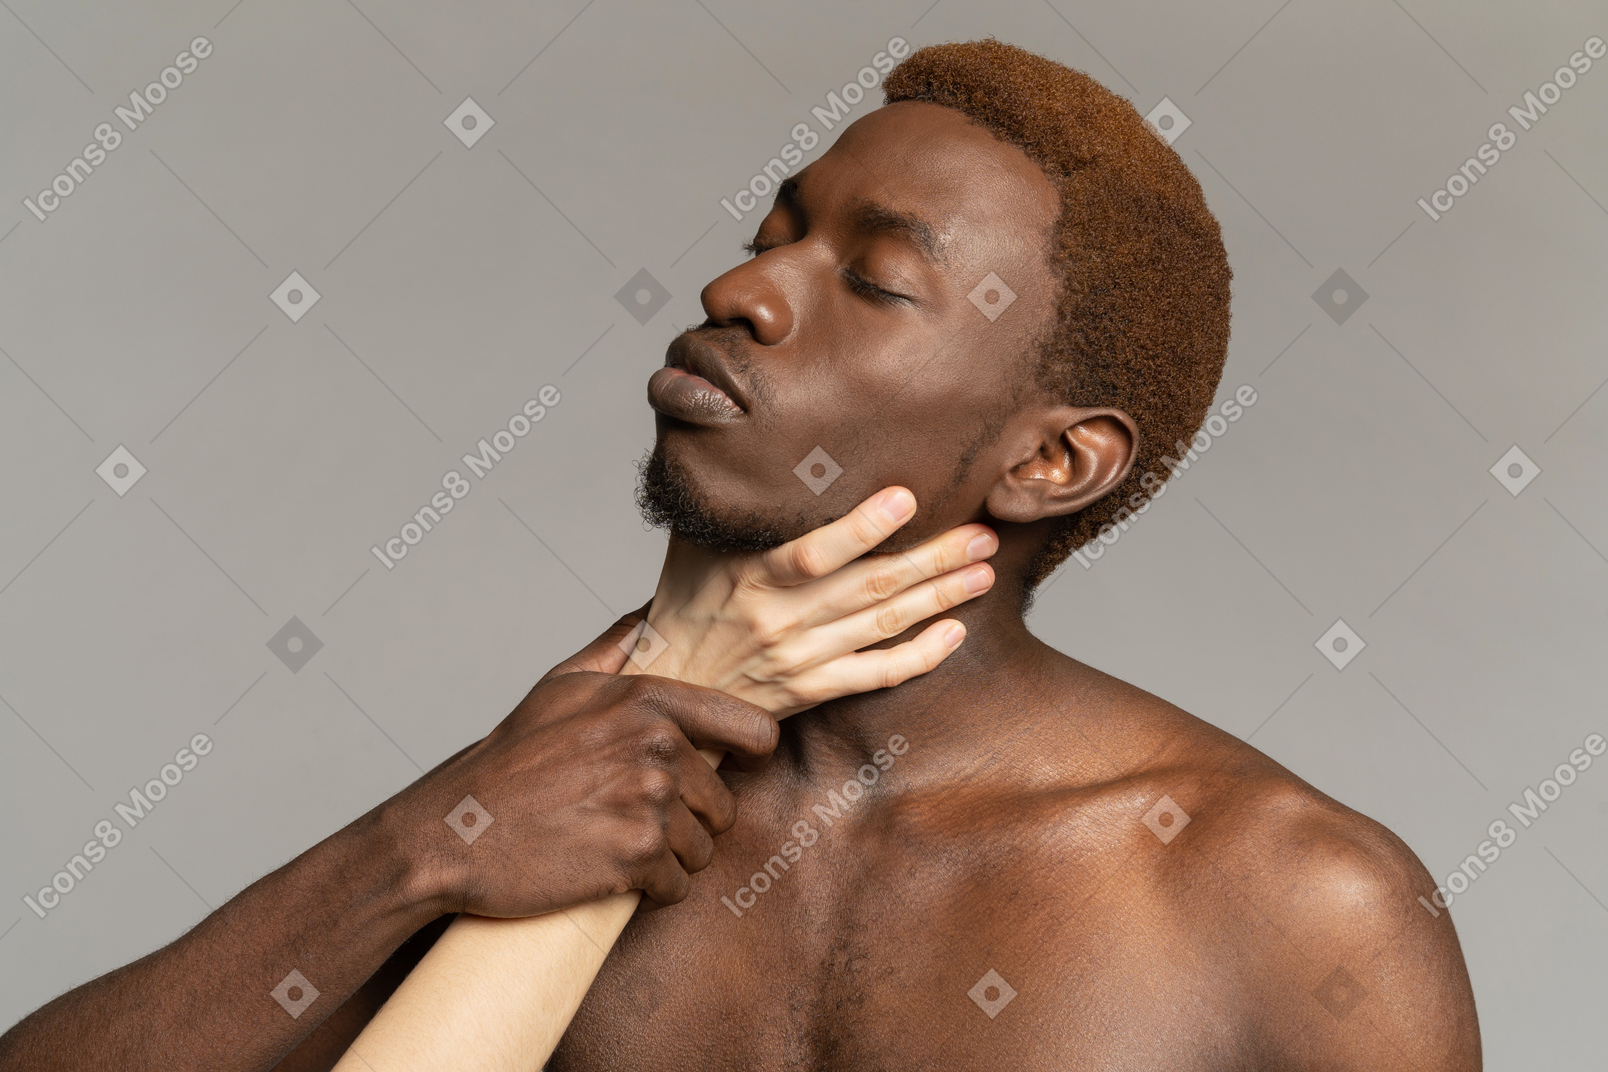 Mano bianca che tiene il collo di un giovane uomo di colore